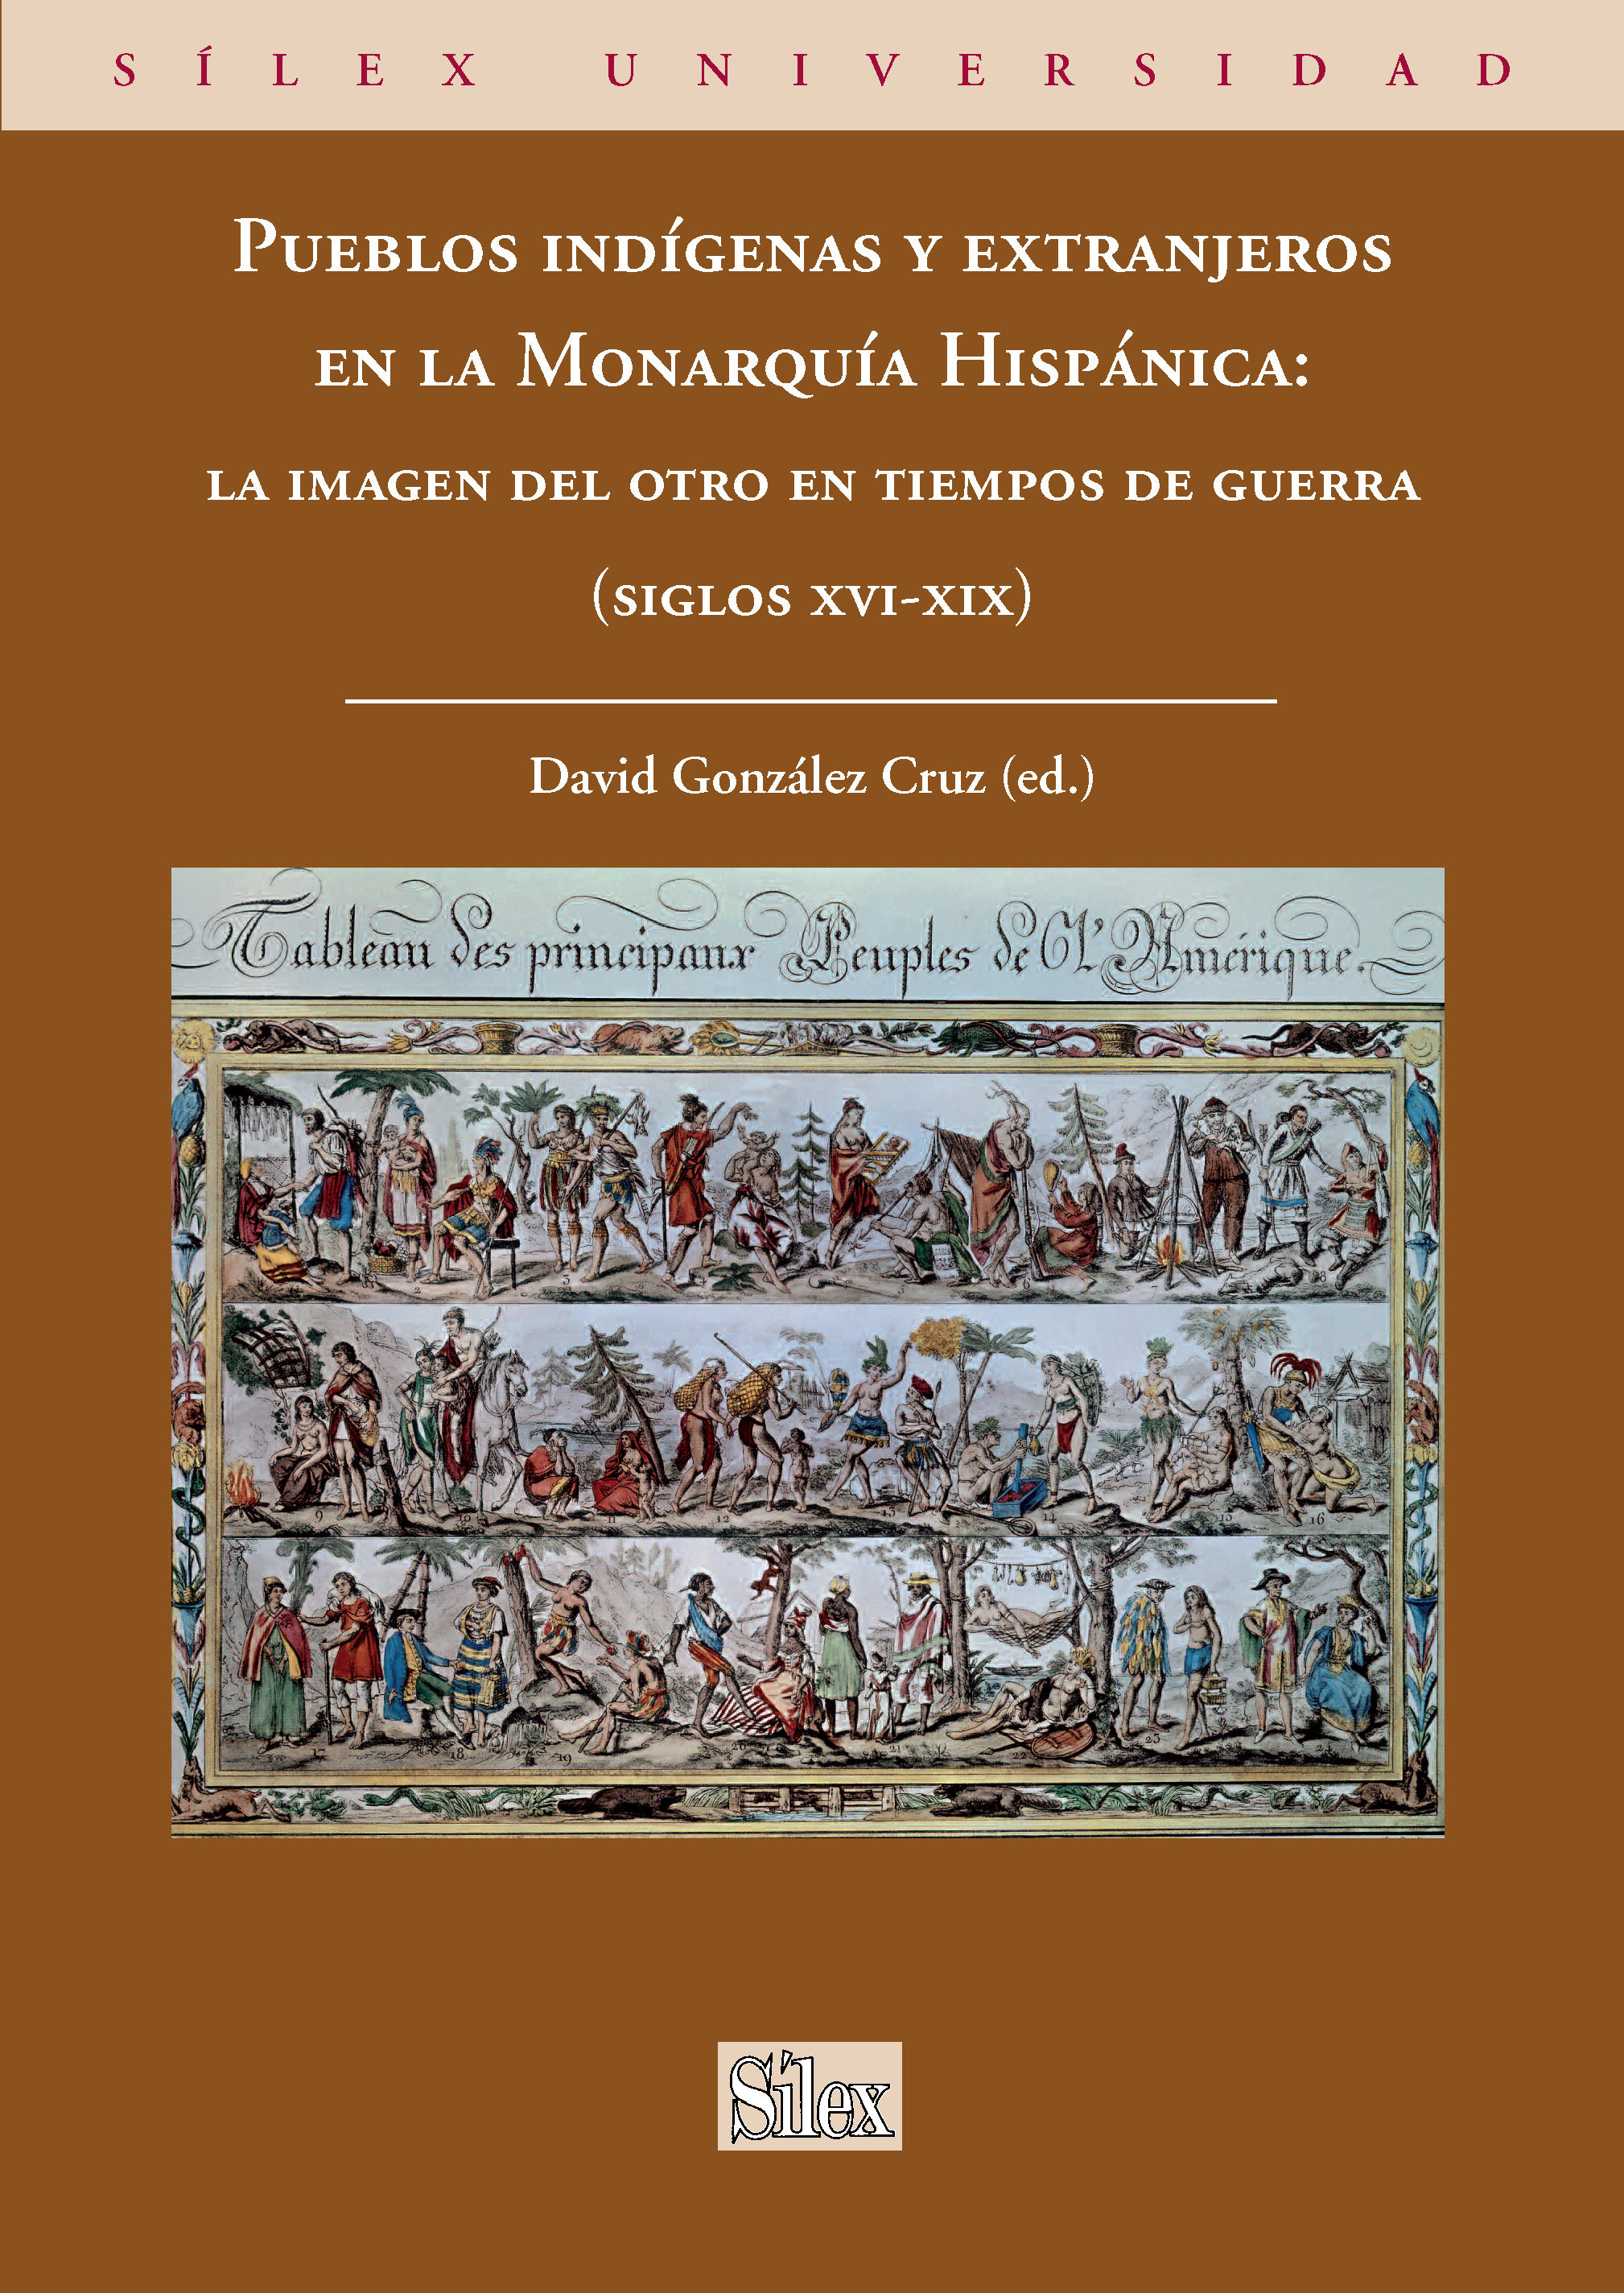 Imagen de portada del libro Pueblos indígenas y extranjeros en la Monarquía Hispánica